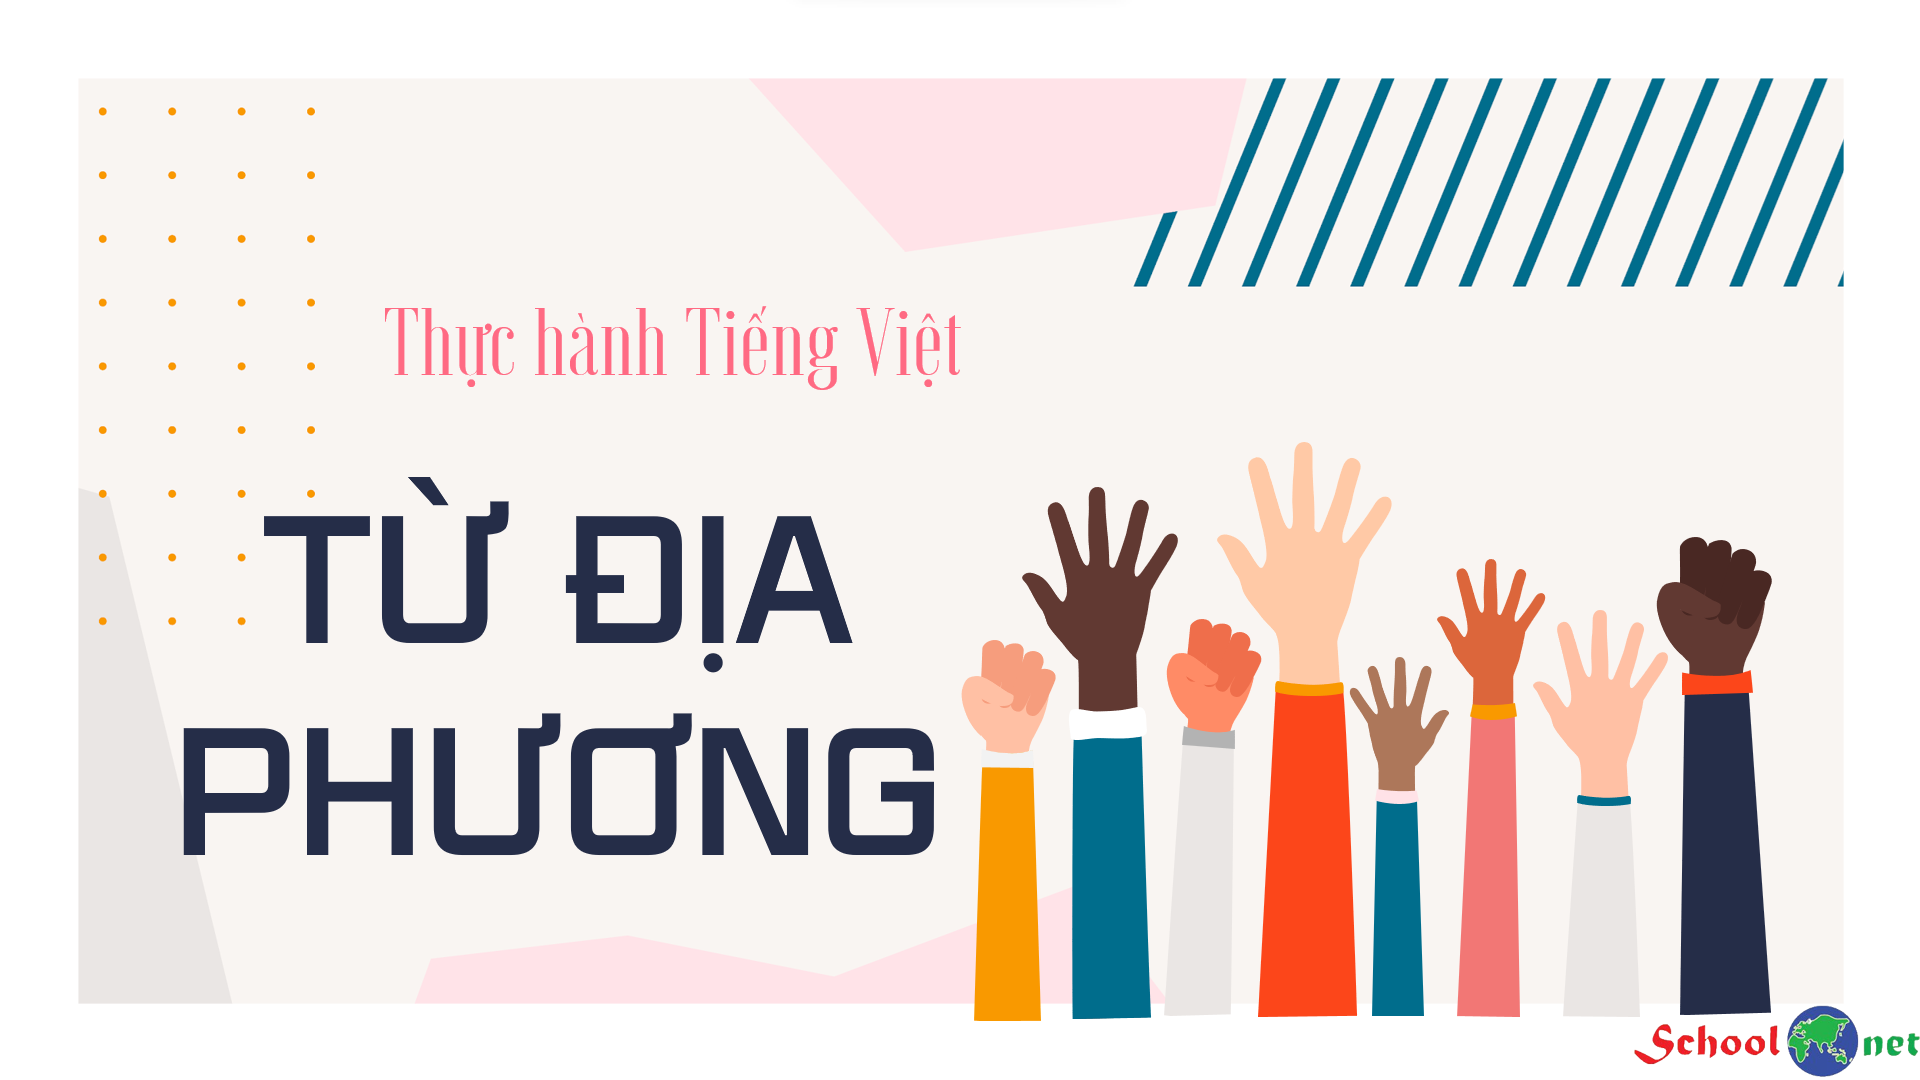 Bài 1: Thực hành tiếng Việt: Từ địa phương - Bộ sách Kết nối tri thức với cuộc sống